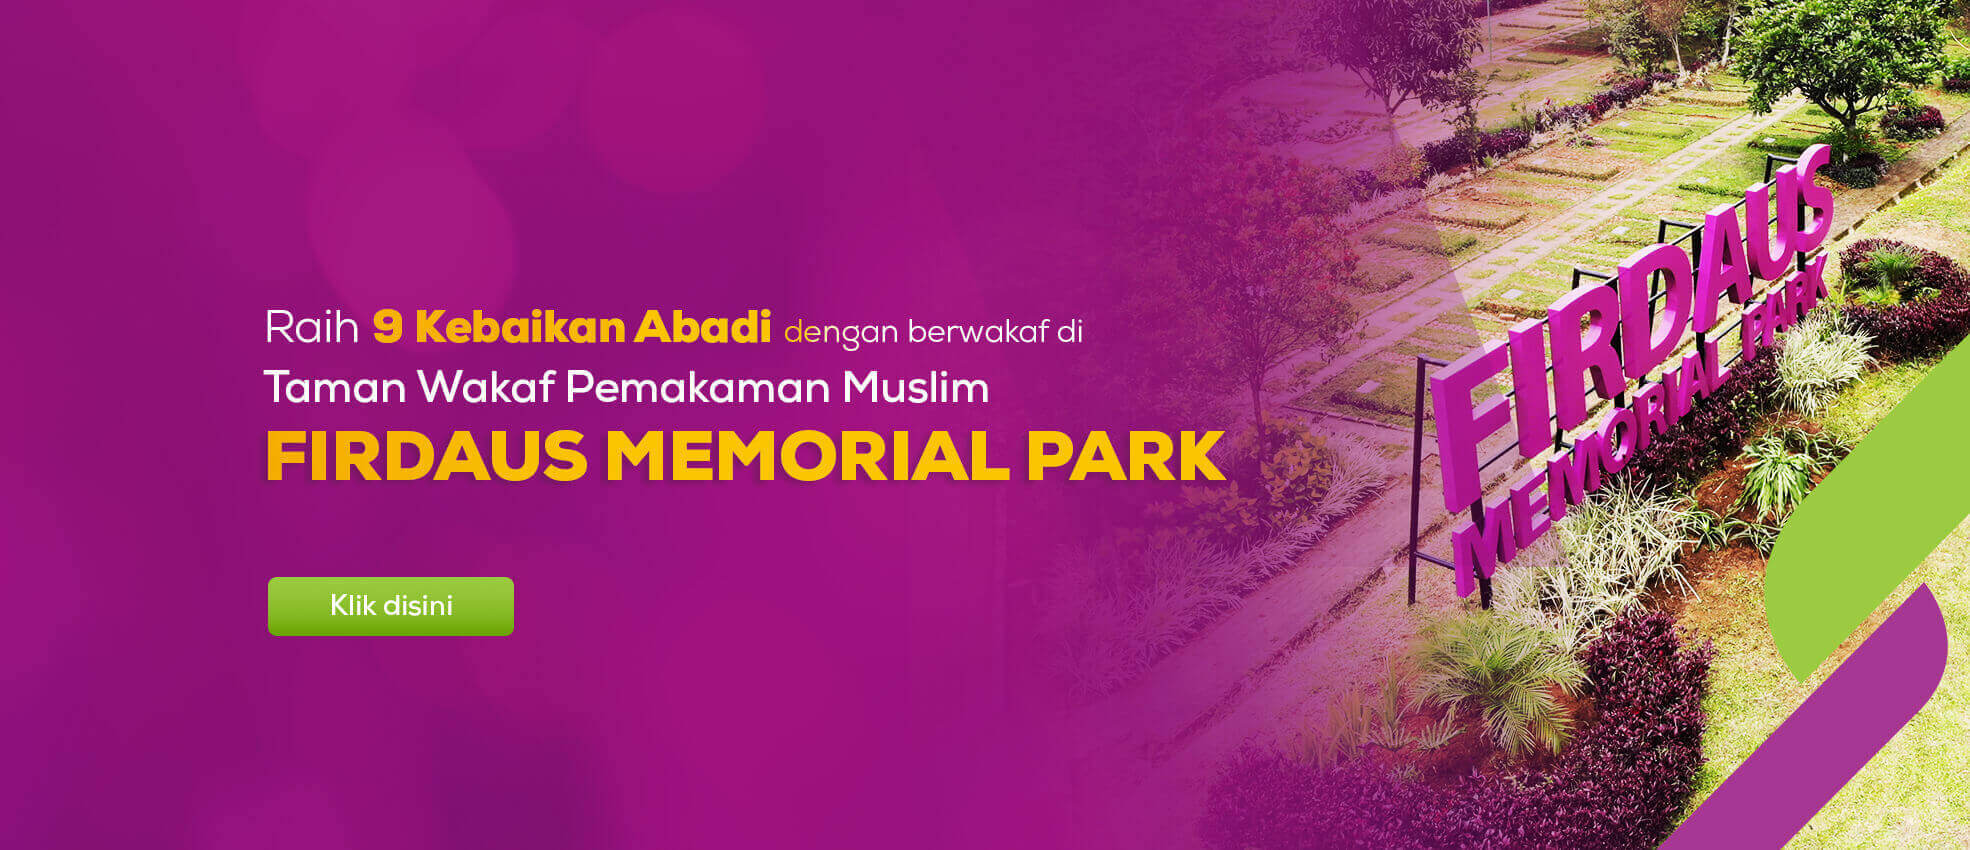 firdaus memorial park, wakaf